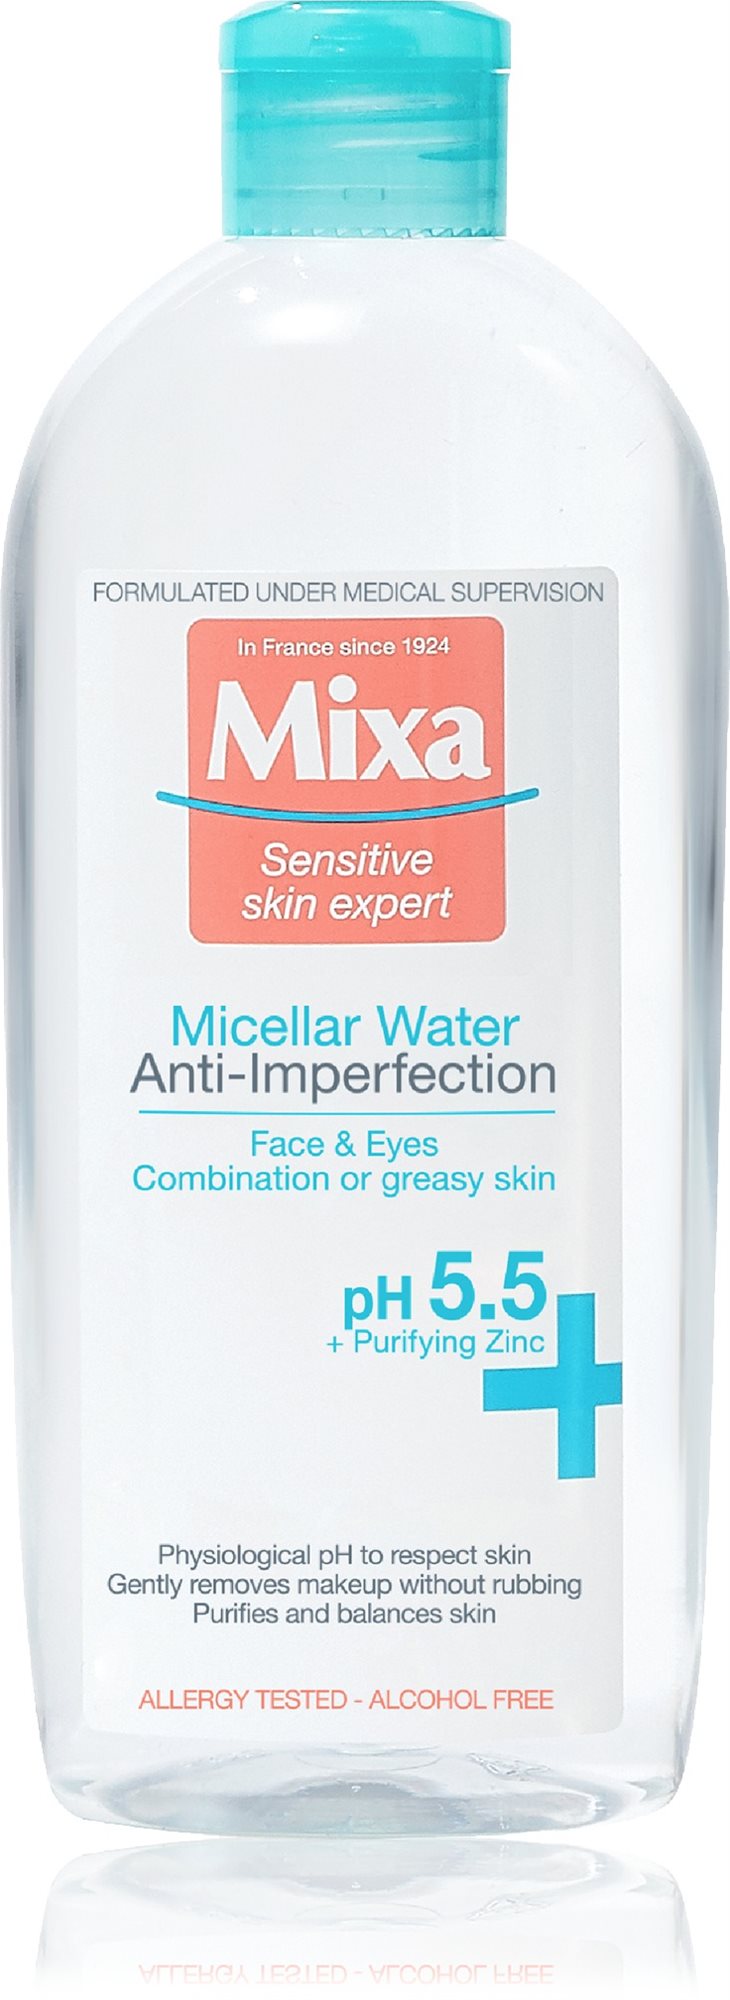 Micellás víz MIXA Anti-Imperfection micelláris víz 400 ml